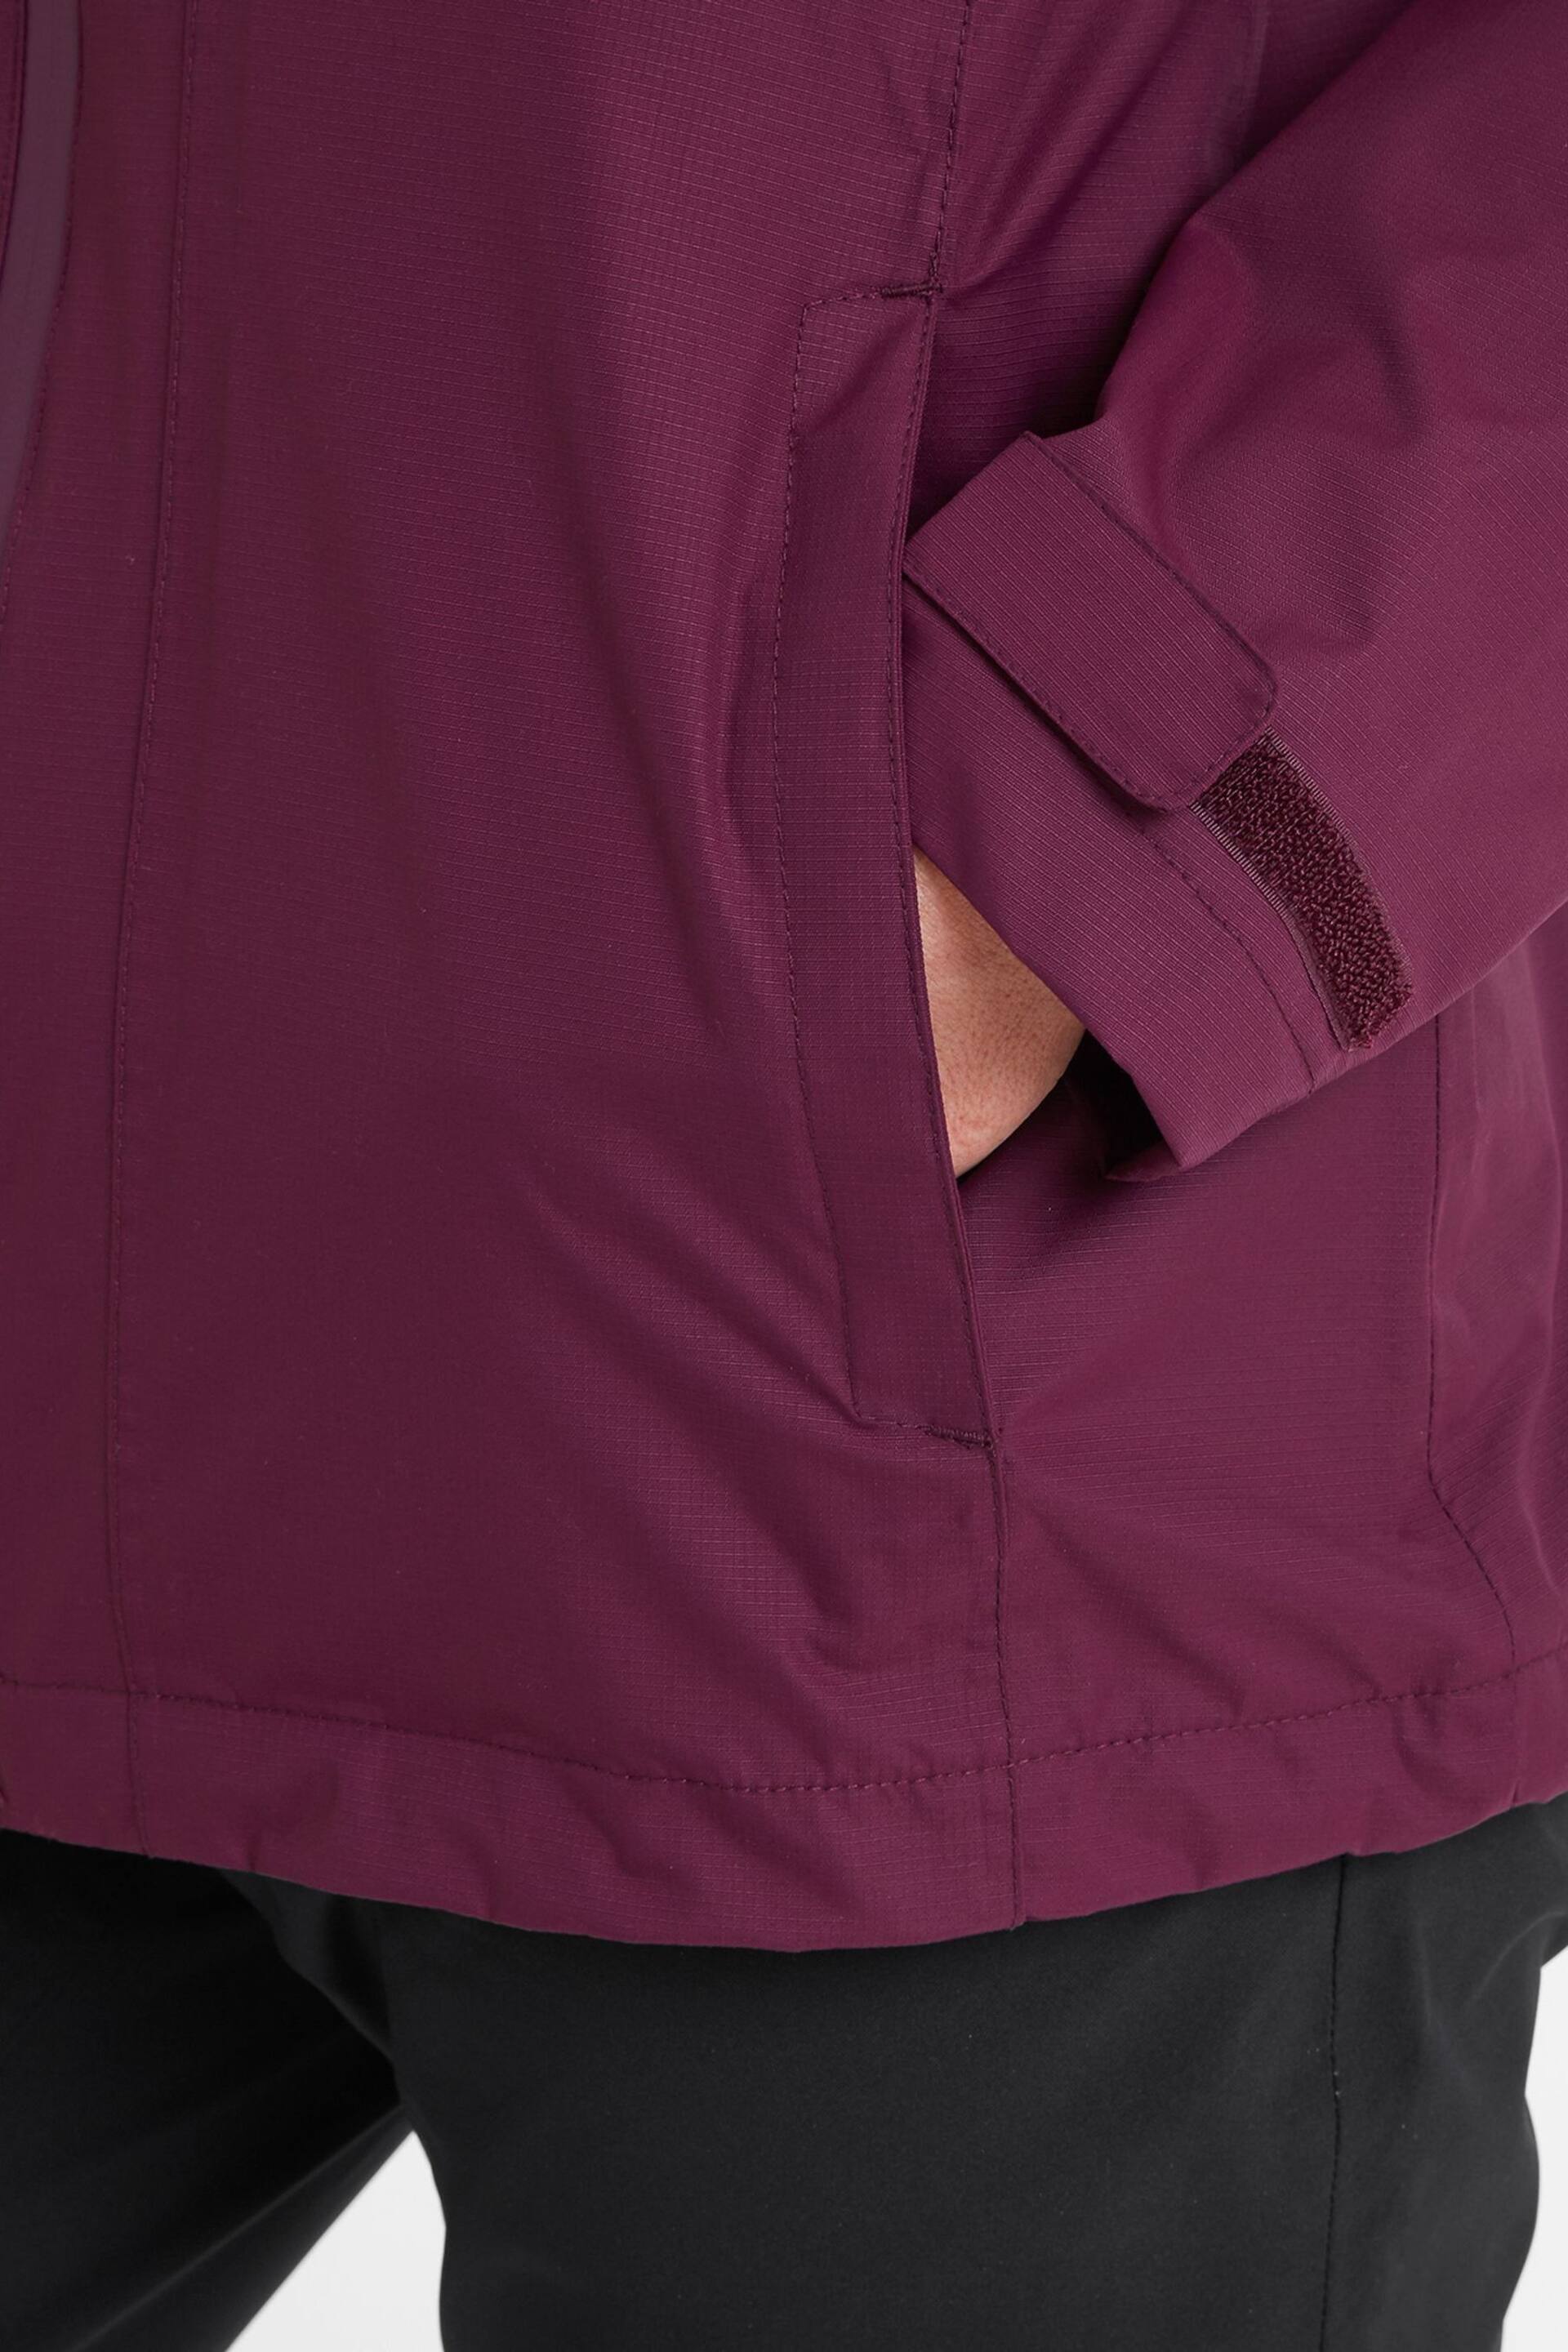 Tog 24 Purple Gribton Waterproof Jacket - Image 6 of 7